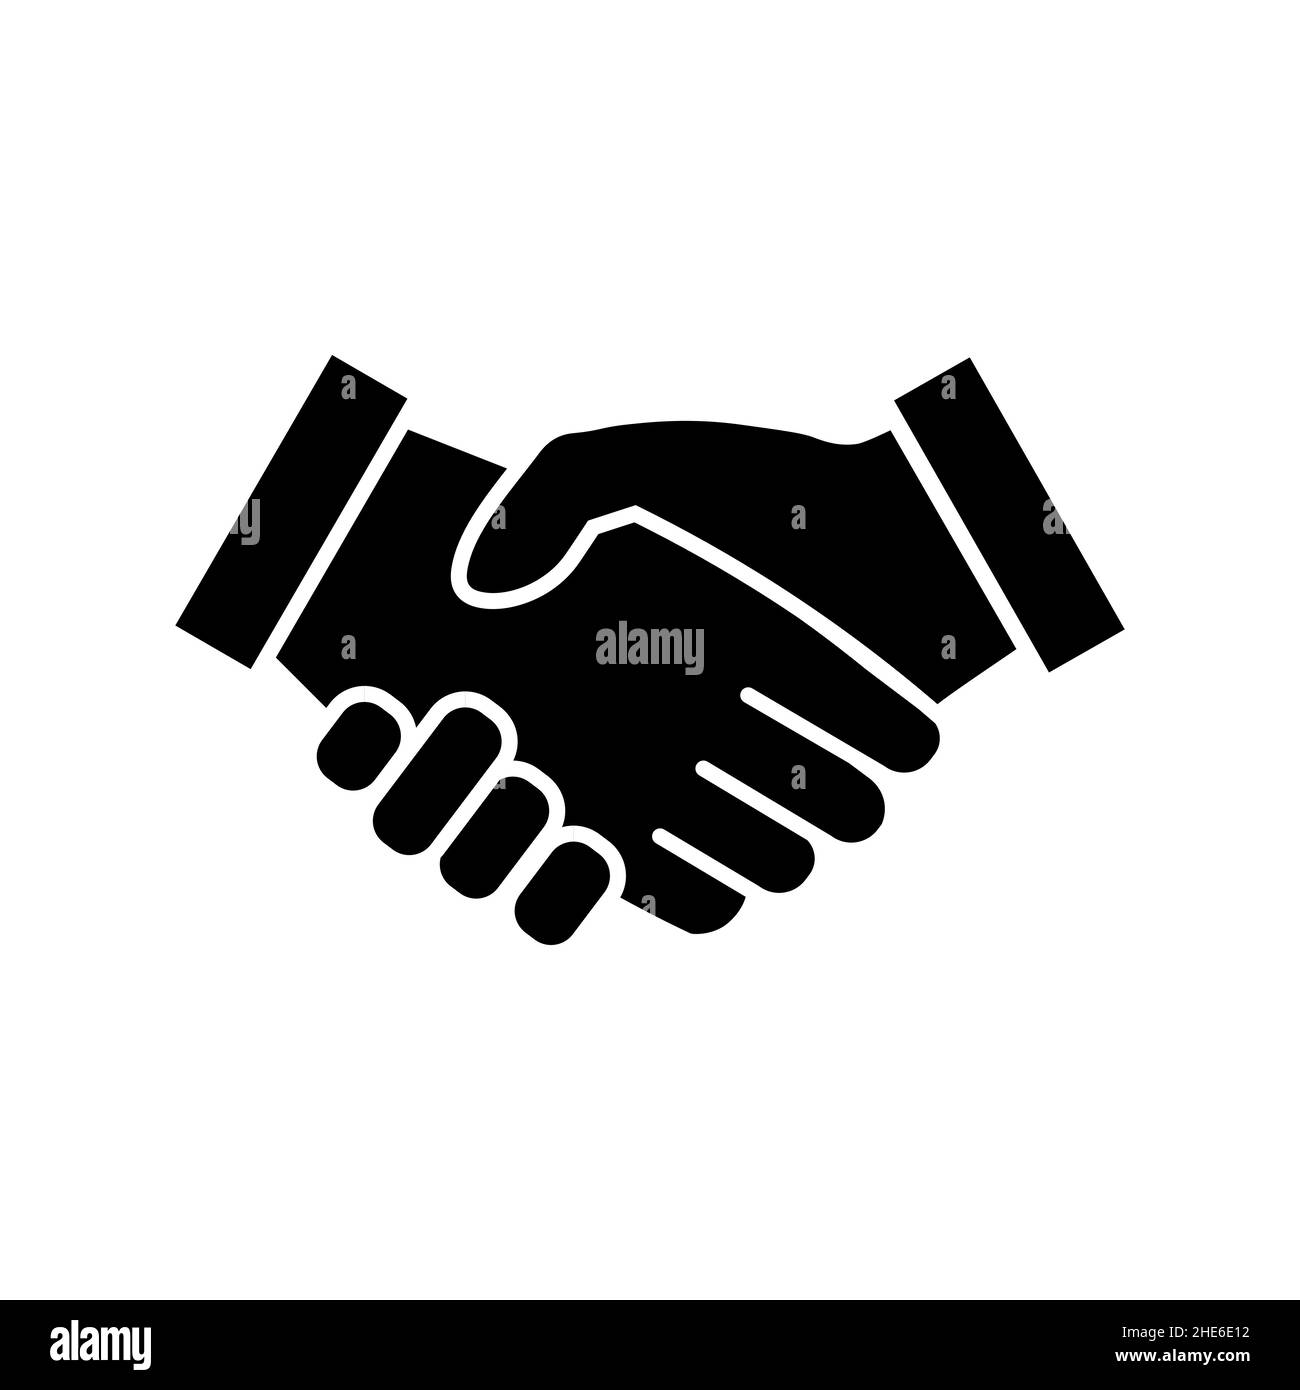 Business-Handshake-Symbol auf Weiß isoliert. Vertragssymbol in flacher Ausführung. Einfaches Partnerschaftszeichen in schwarz moderne flache Vektor-Illustration f Stock Vektor